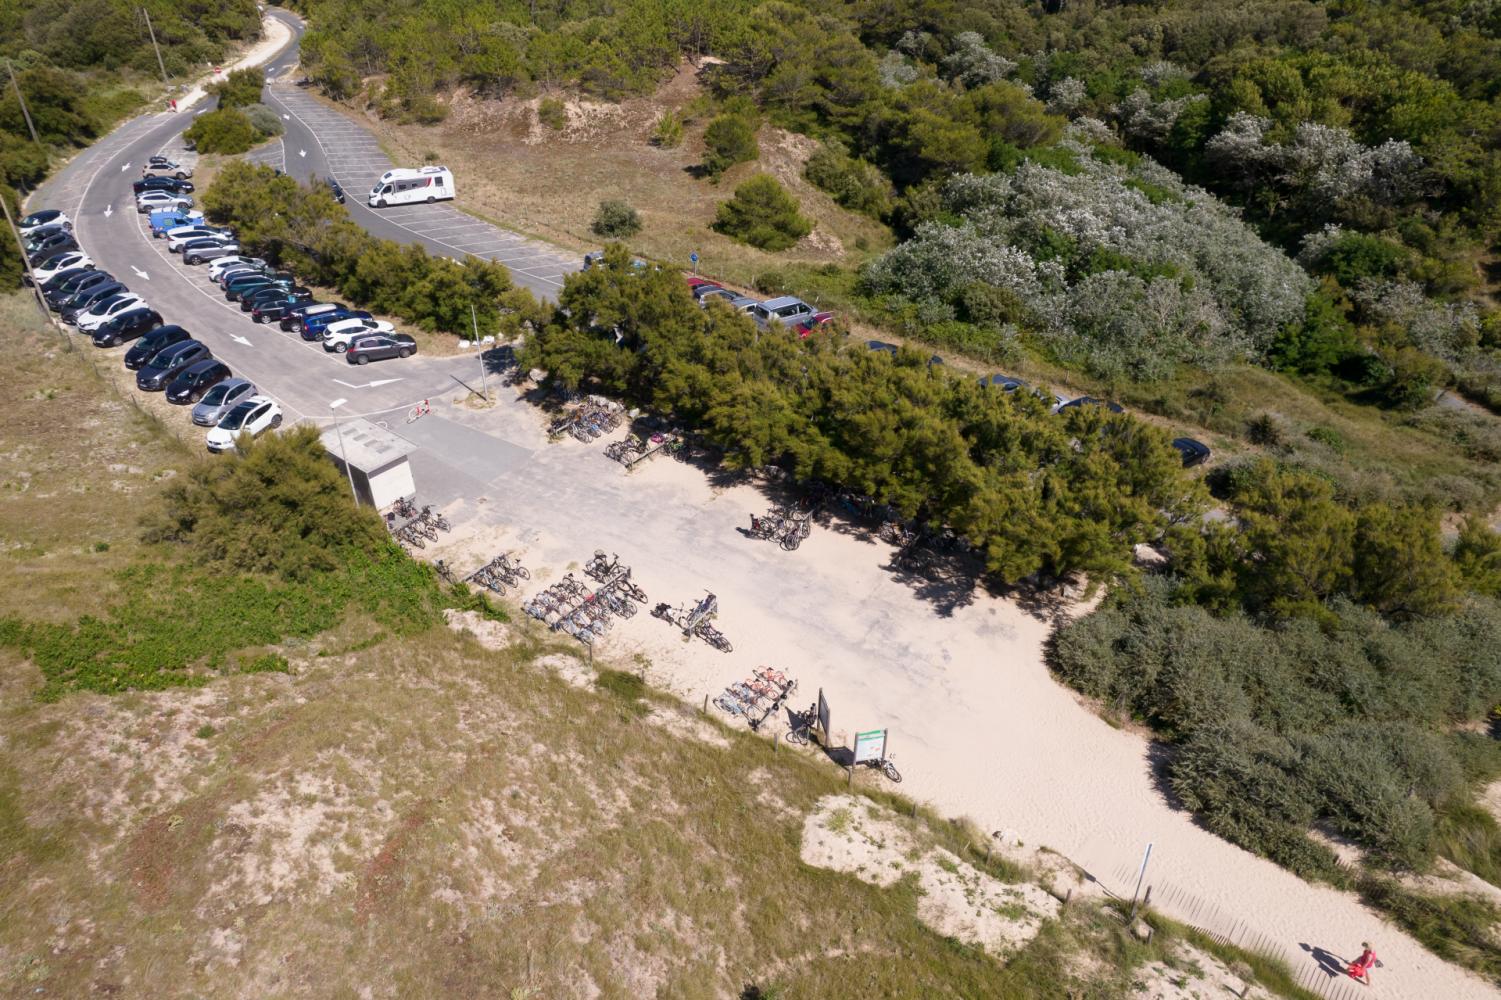 Vue drone accès plage + stationnement - Sables vigniers